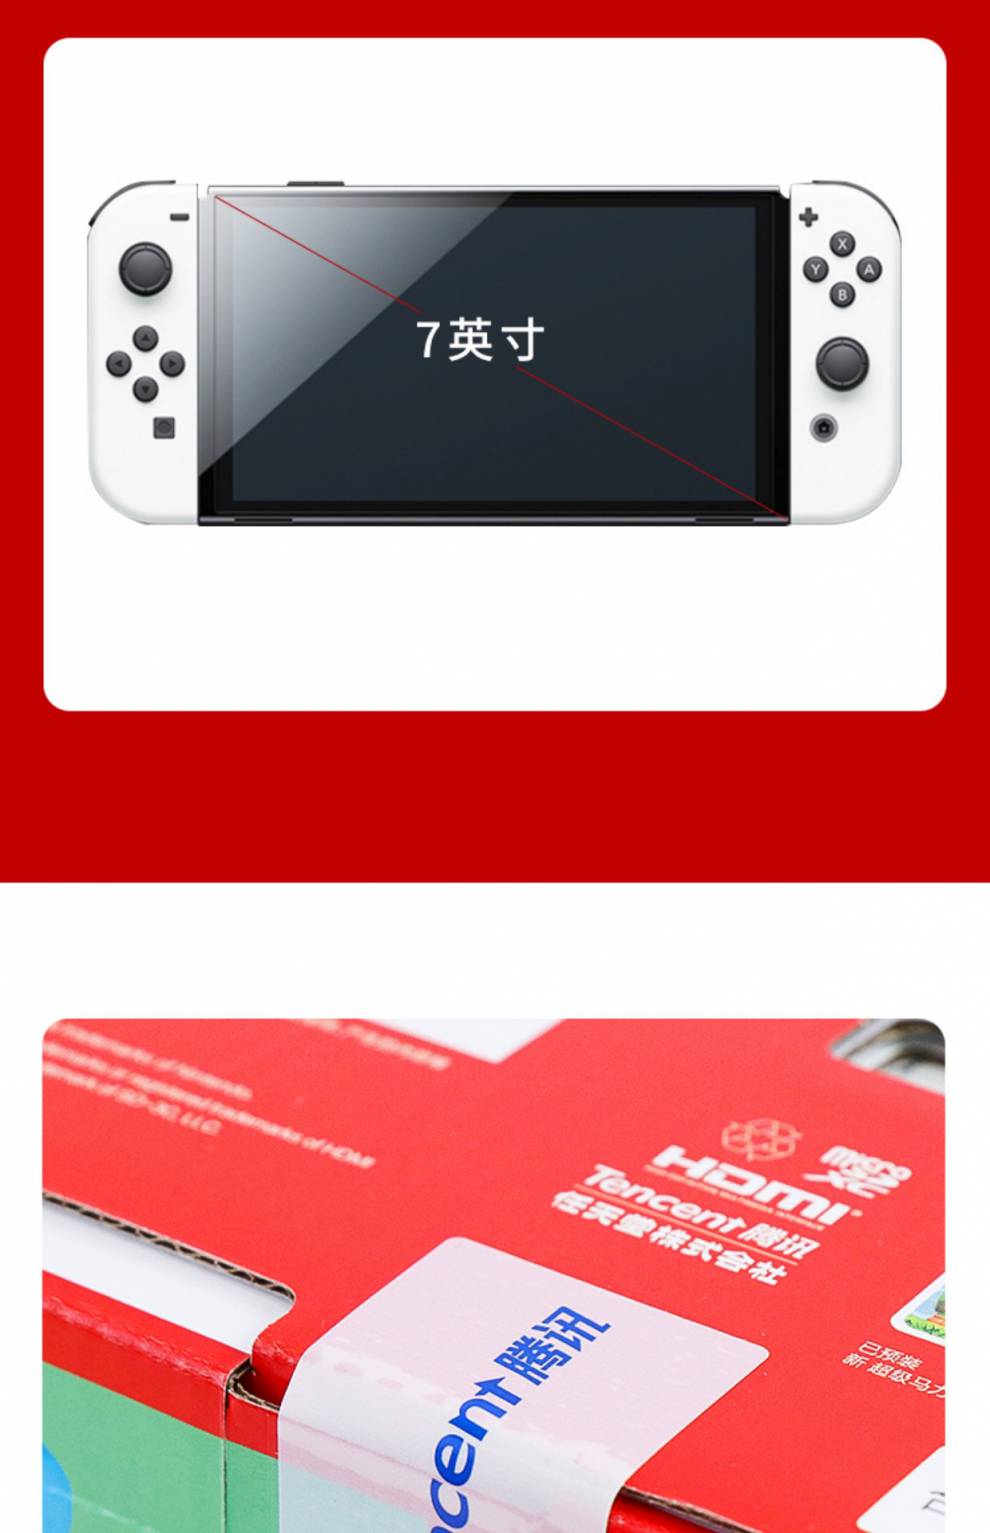 任天堂 Switch 连接音响设备：提升游戏视听享受的创新领域  第2张